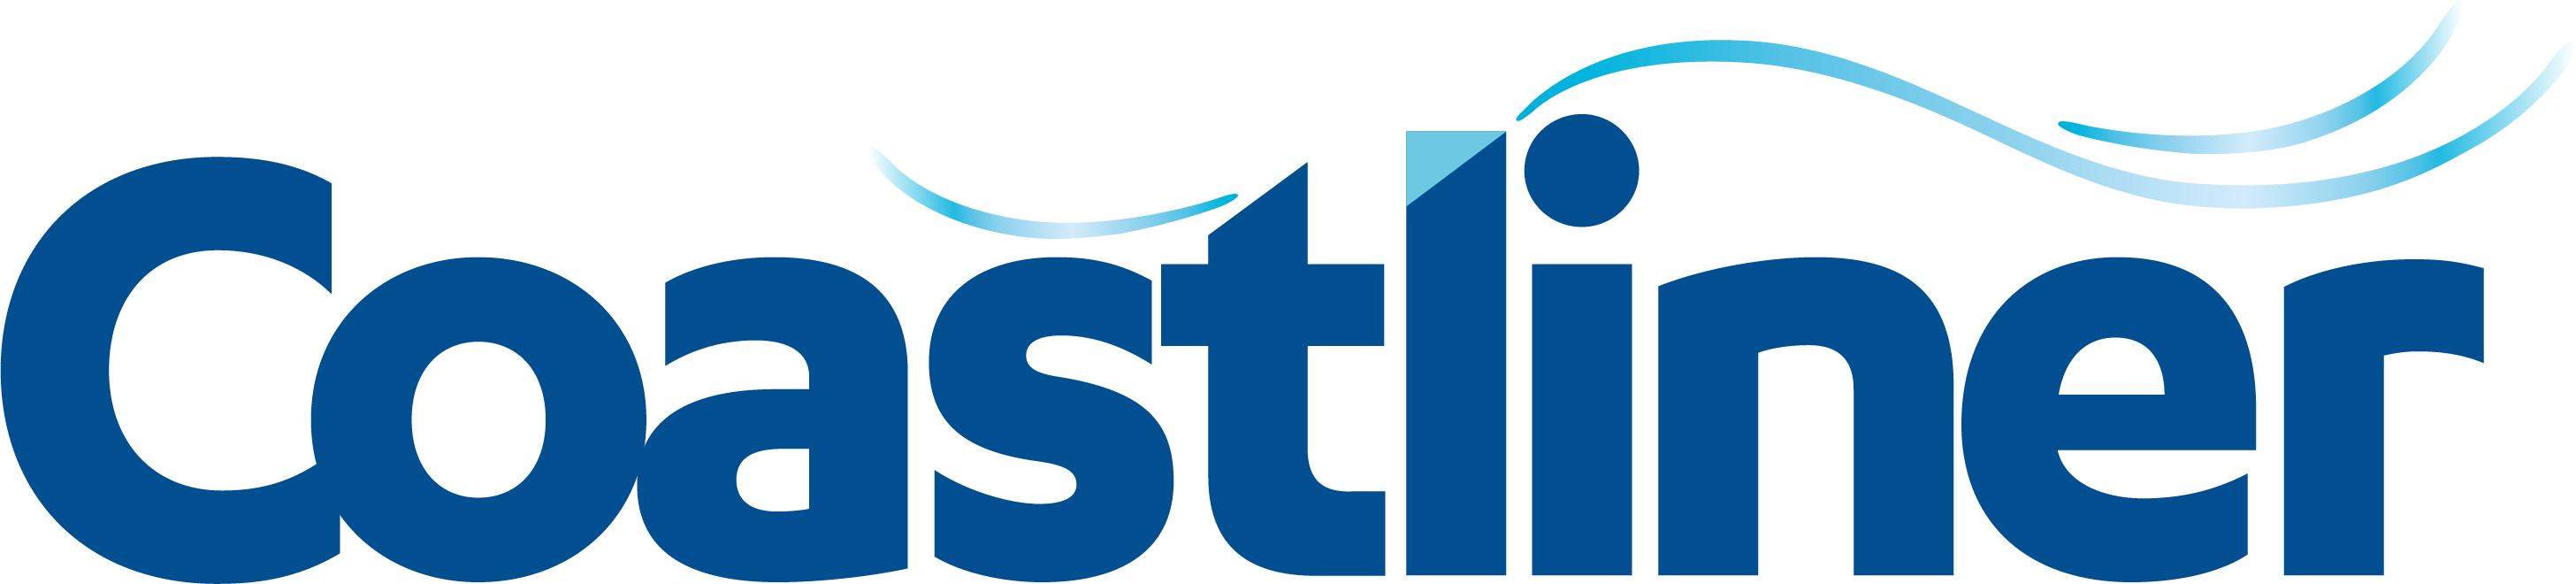 Coastliner-logo